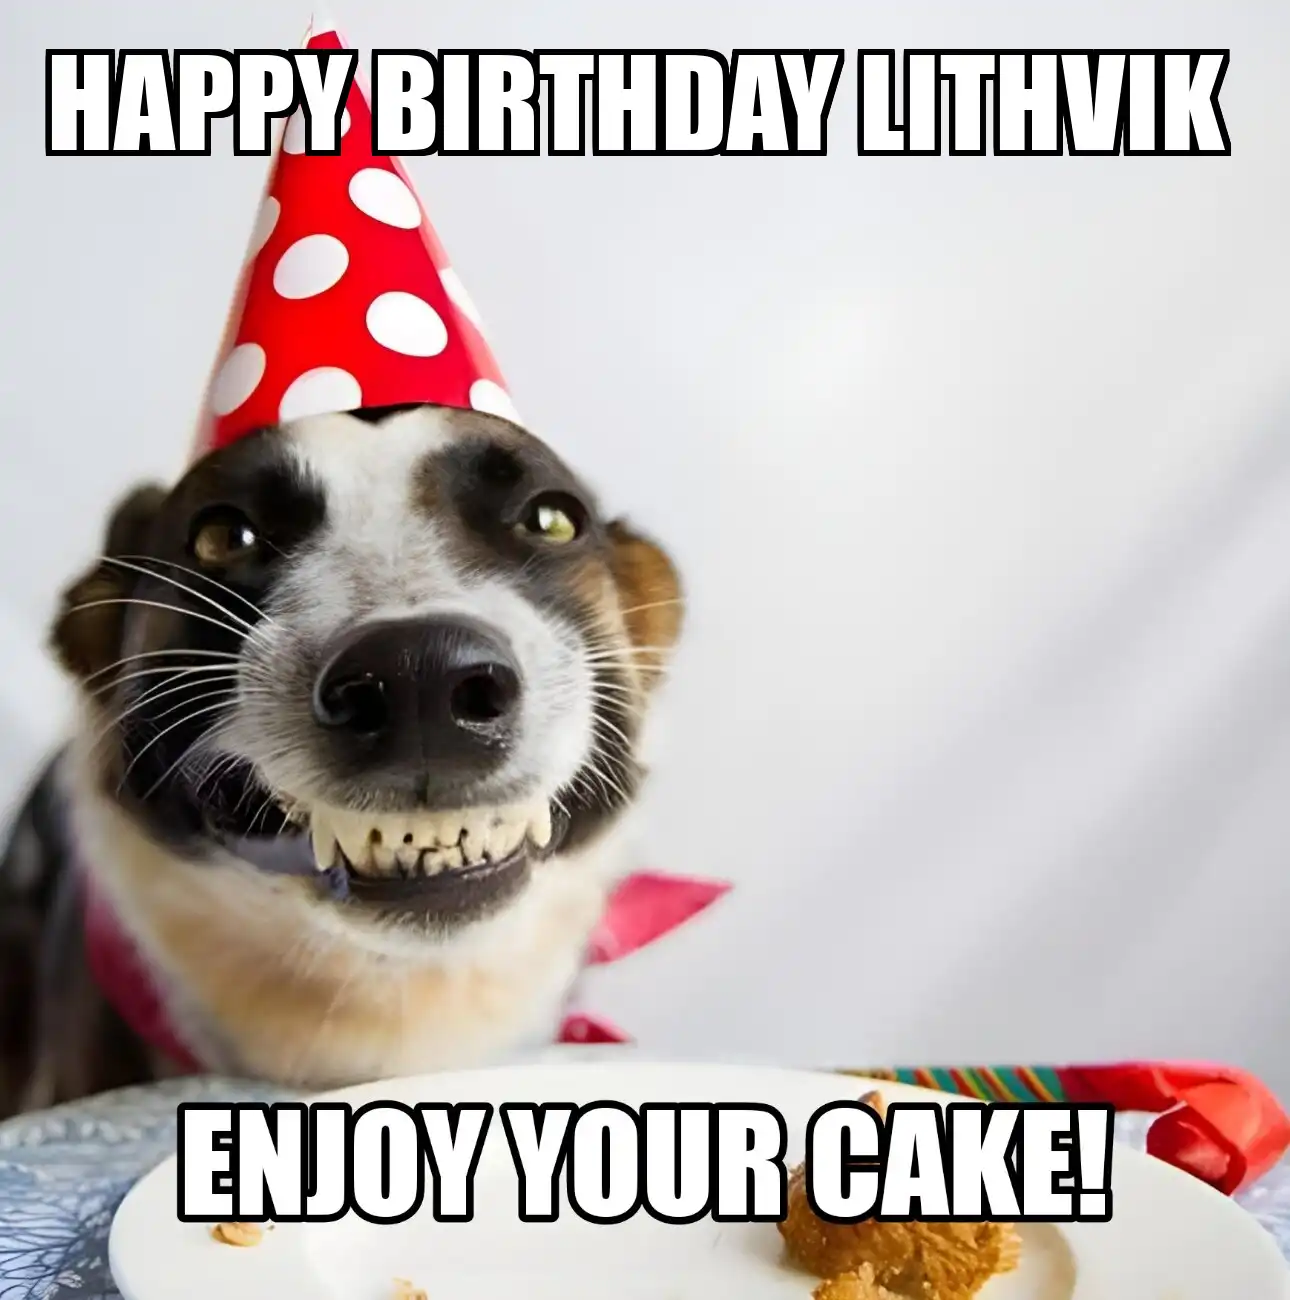 Happy Birthday Lithvik Enjoy Your Cake Dog Meme